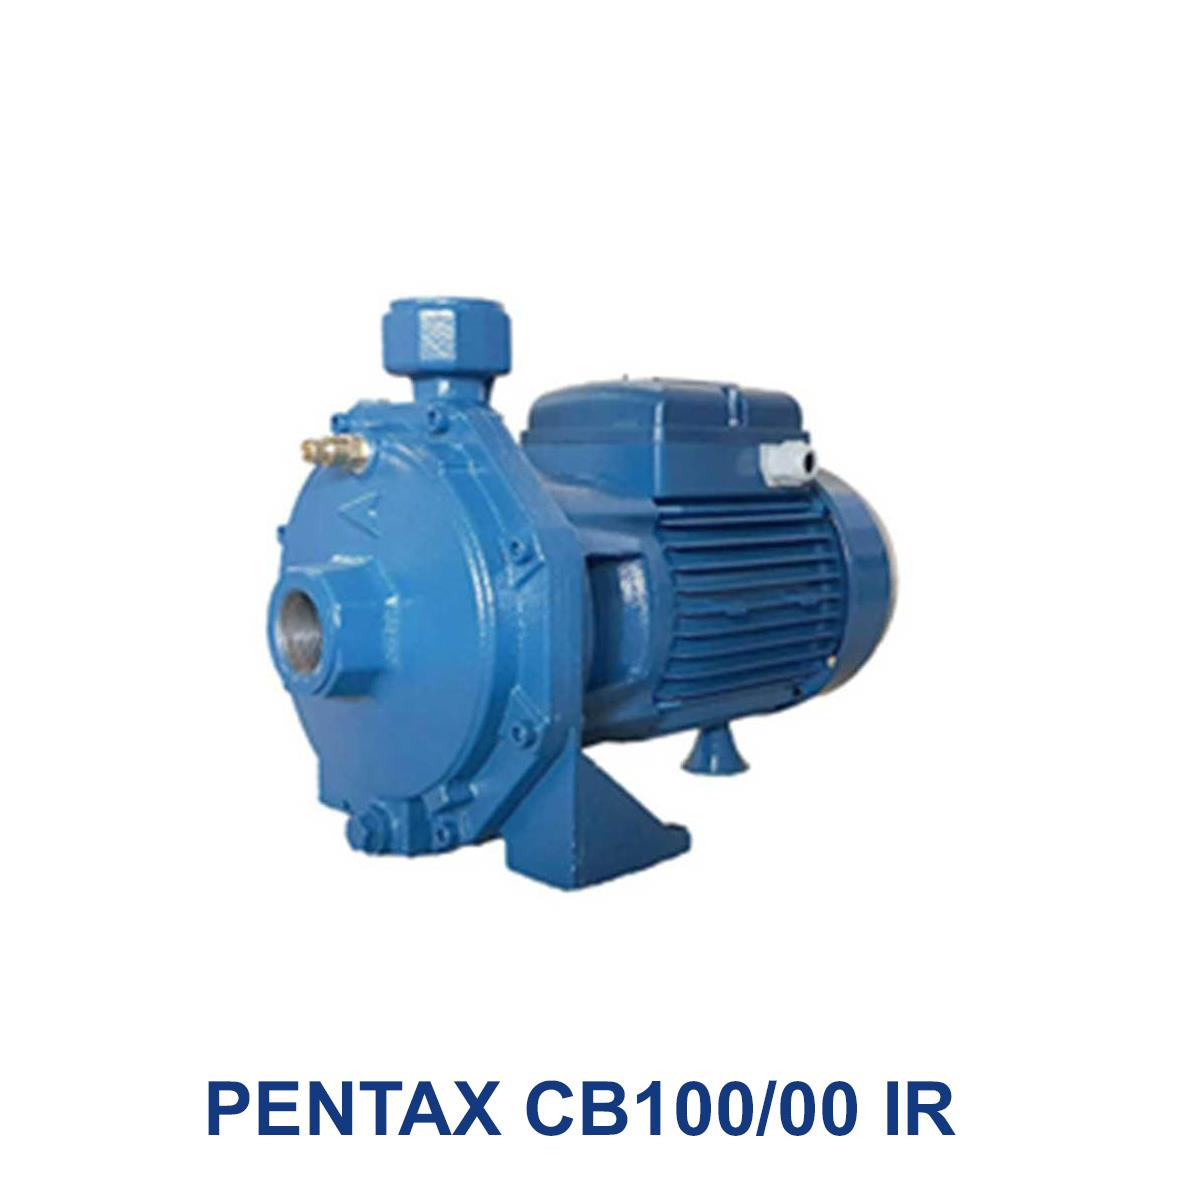 PENTAX-CB100-00-IR